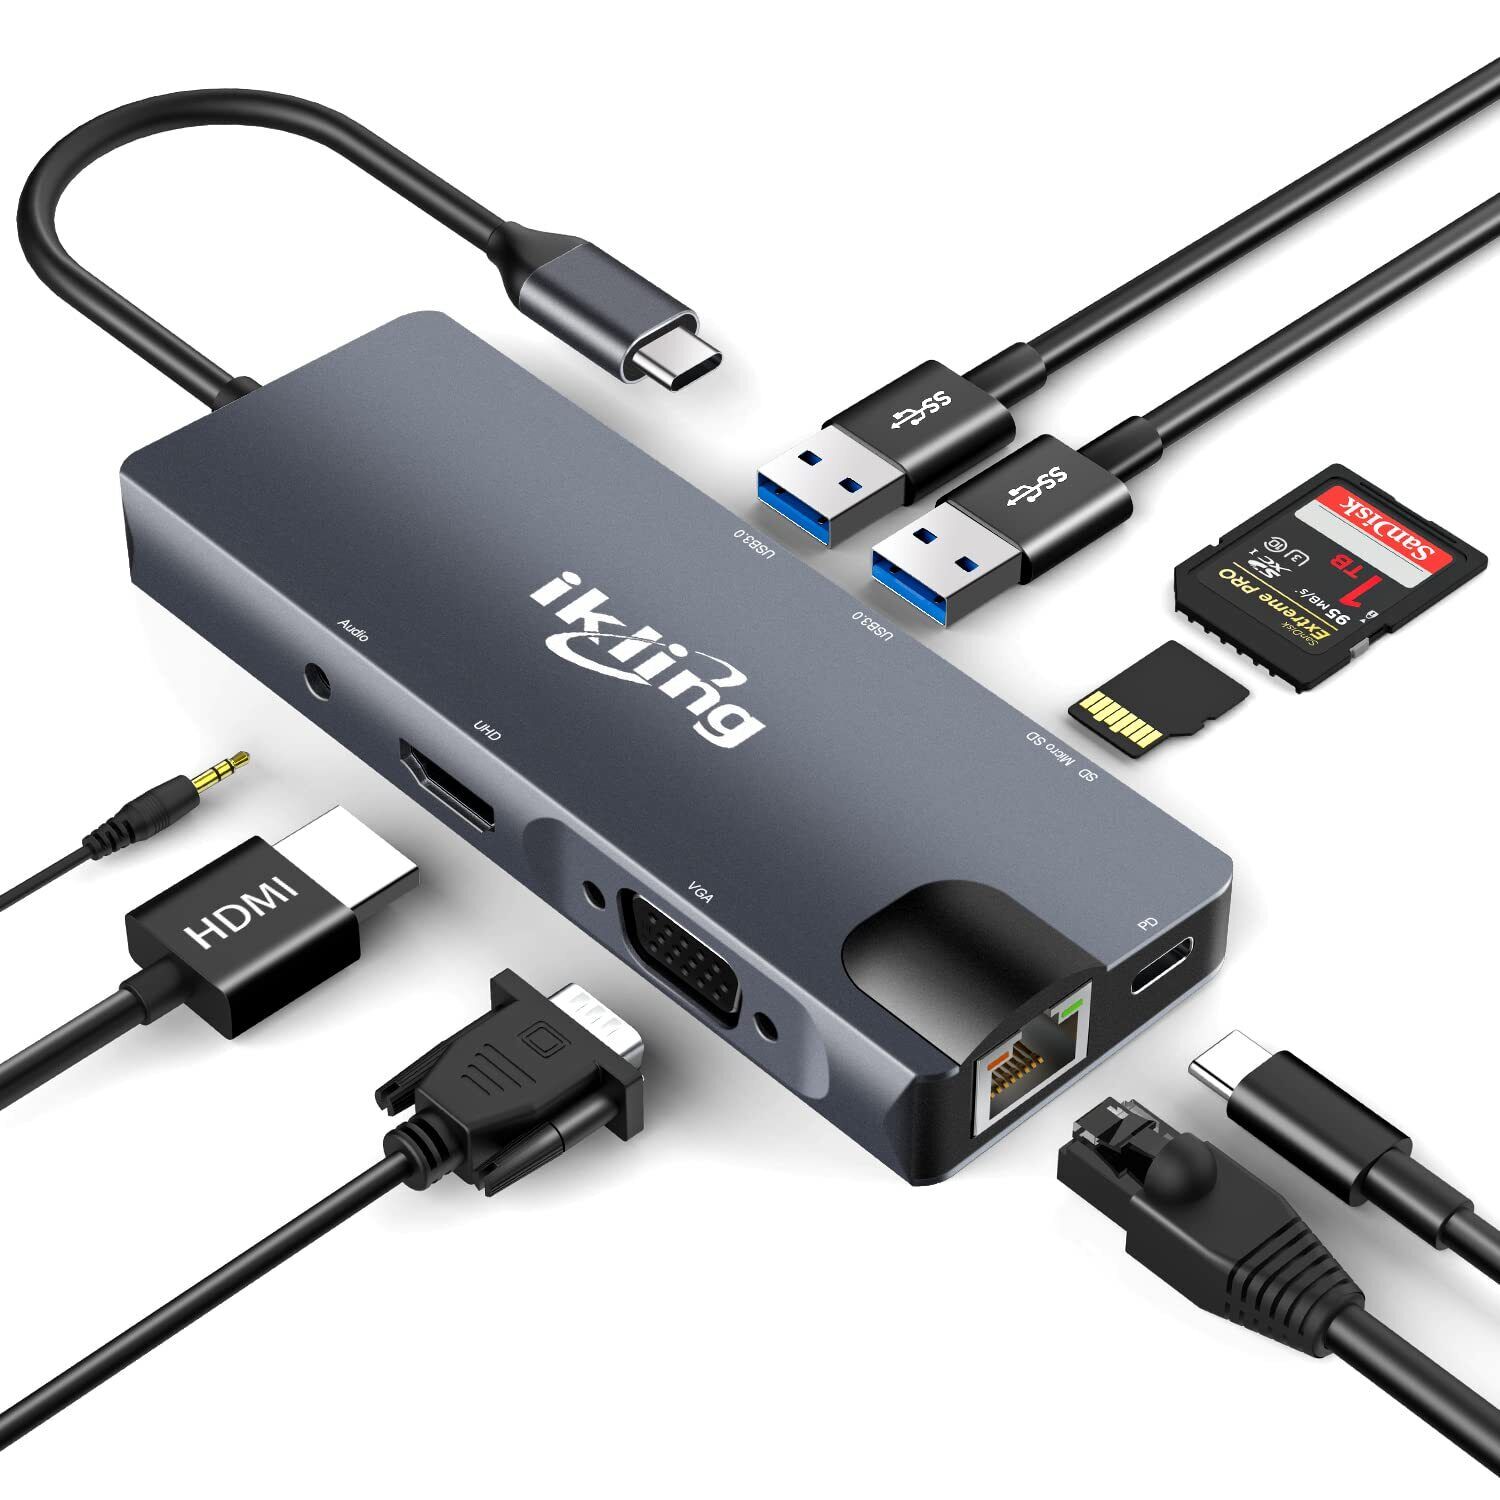 ikling USB C Hub, 9-in-1 USB C Adapter with 4K USB C to HDMI, VGA, Gigabit Et...